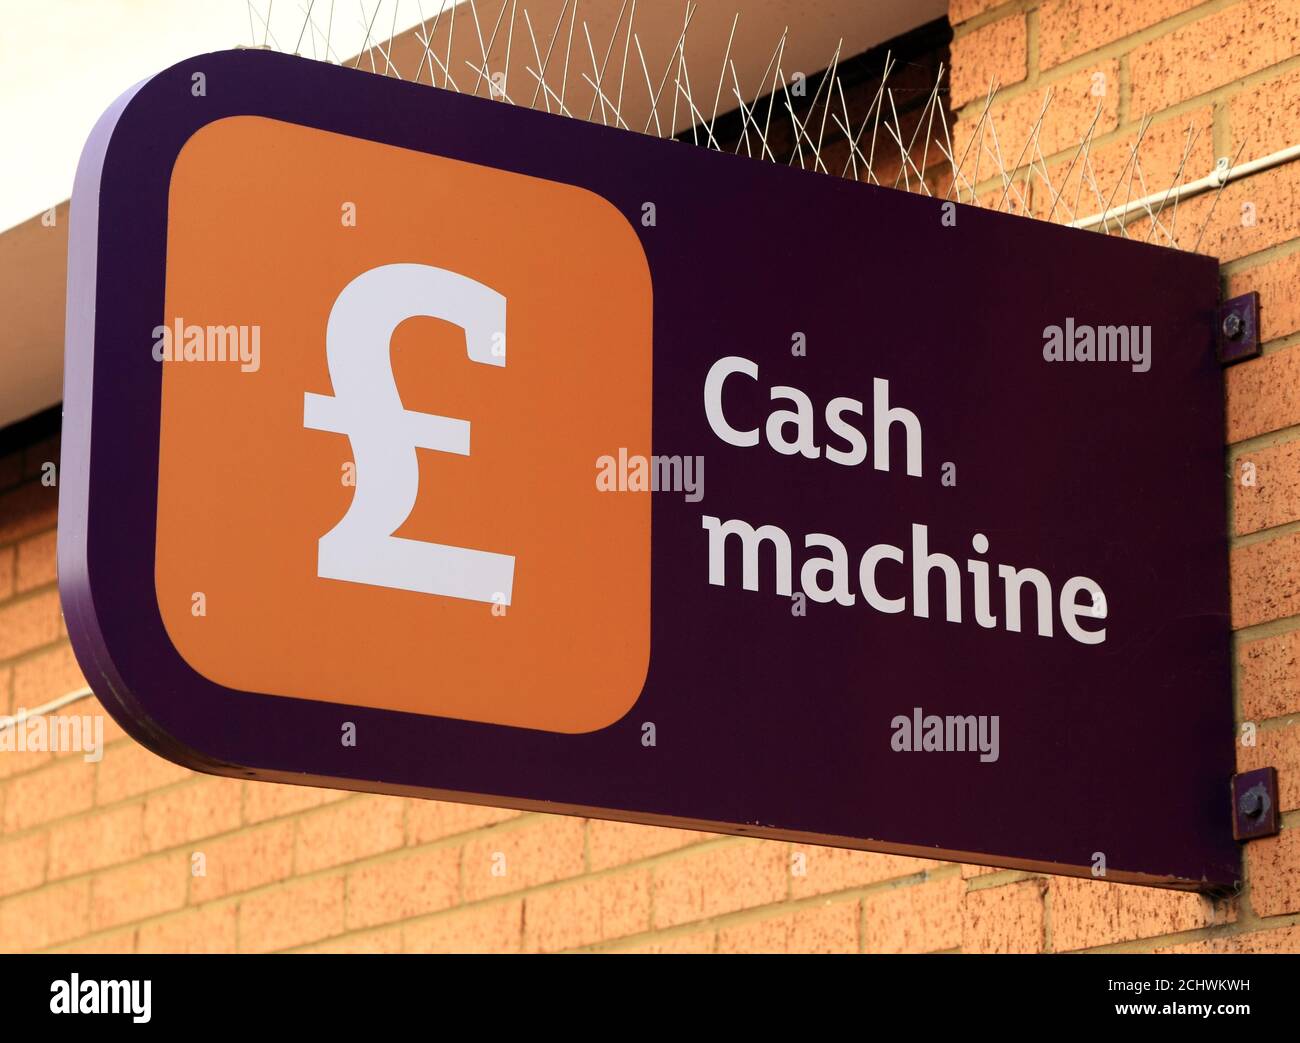 Distributeur automatique de billets, panneau, supermarché Sainsbury's, Hunstanton, Norfolk, Angleterre, Royaume-Uni Banque D'Images